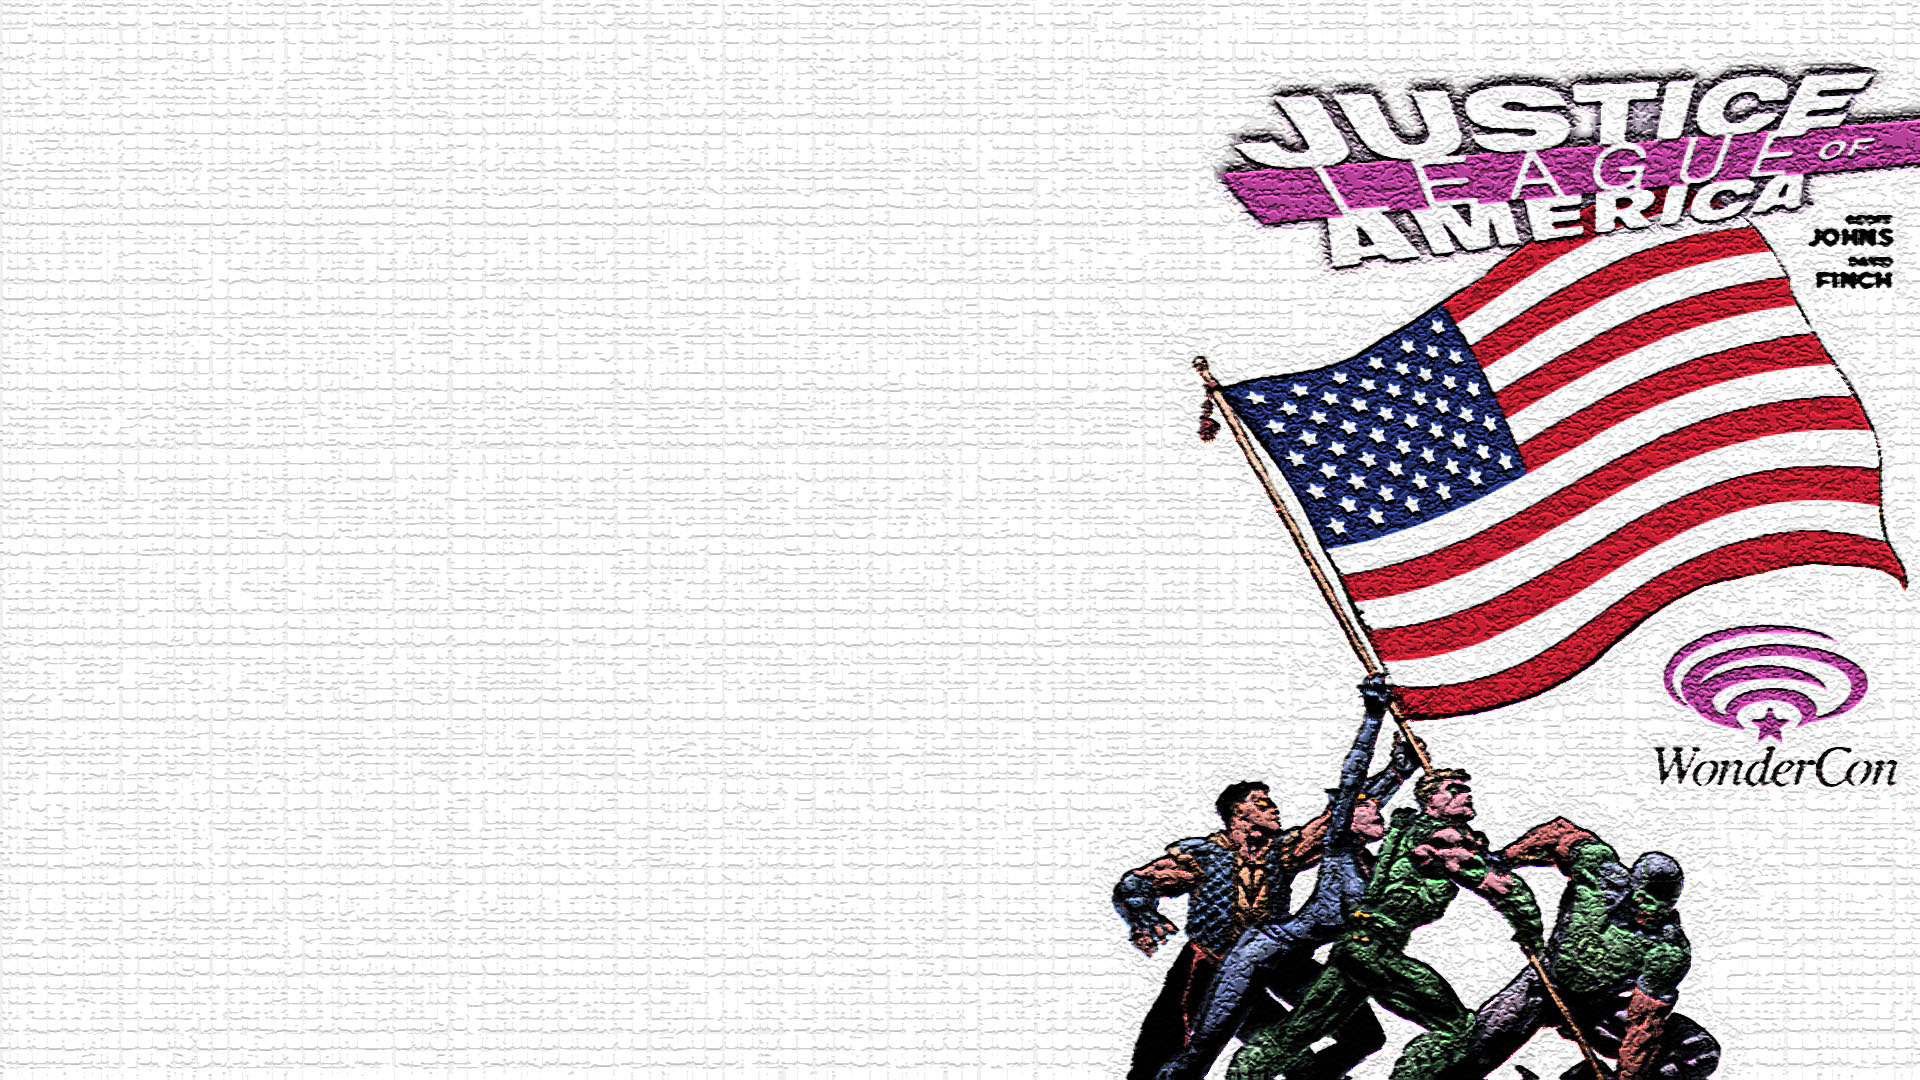 Скачать обои бесплатно Комиксы, Лига Справедливости Америки, Лига Справедливости картинка на рабочий стол ПК